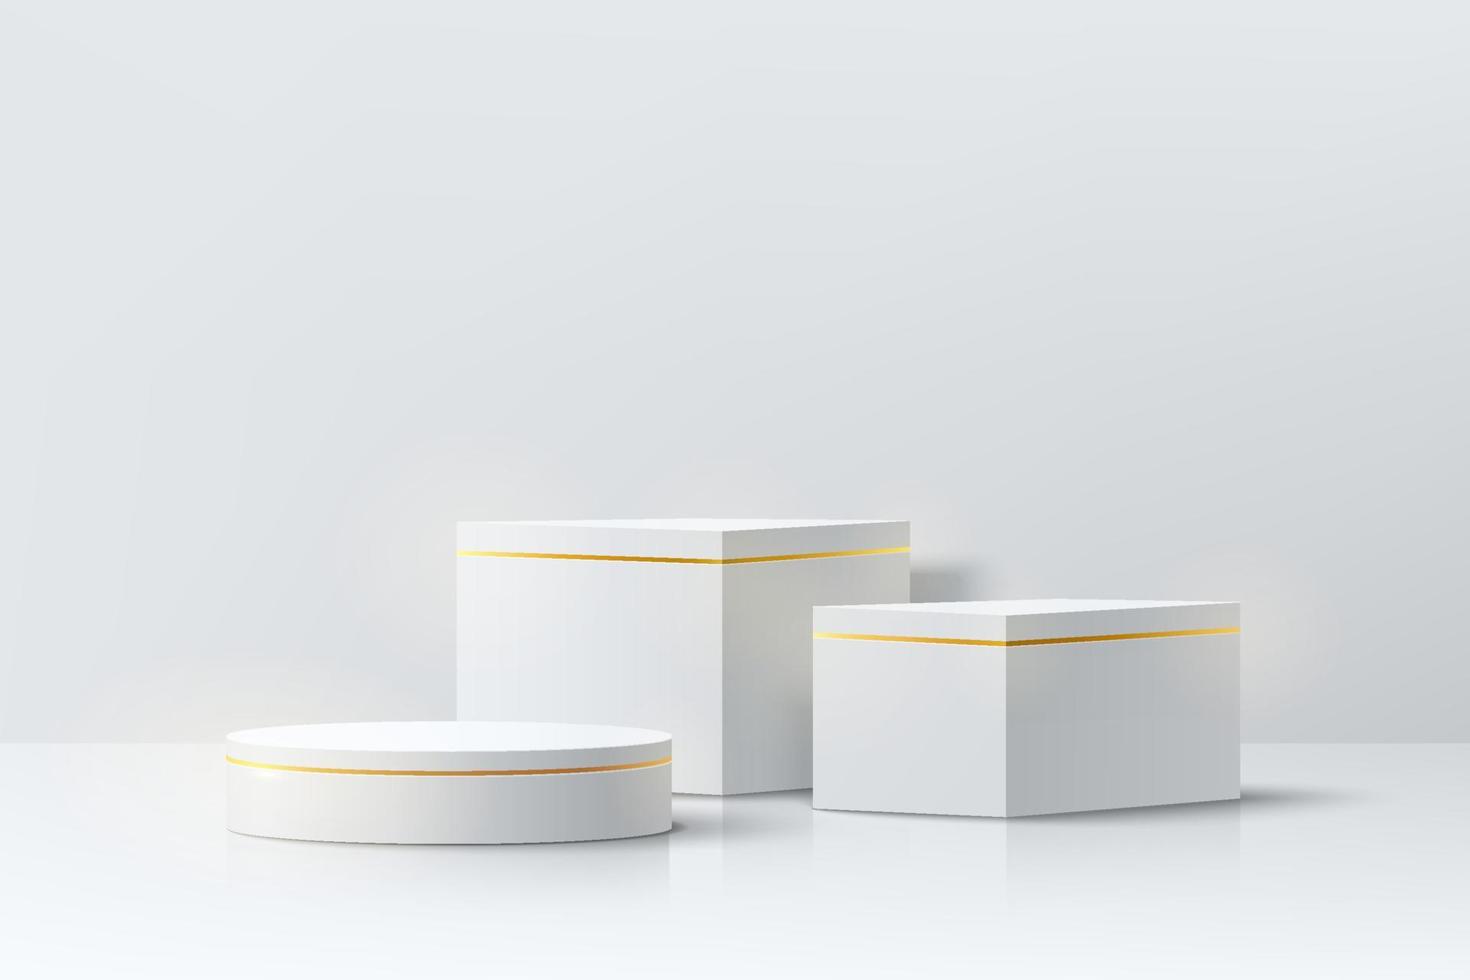 realistisk vit och gyllene 3d kub och cylinder piedestal podium i abstrakt rum. minimal scen för produkter scen showcase, marknadsföring display. vektor geometriska former gruppdesign. vektor eps10